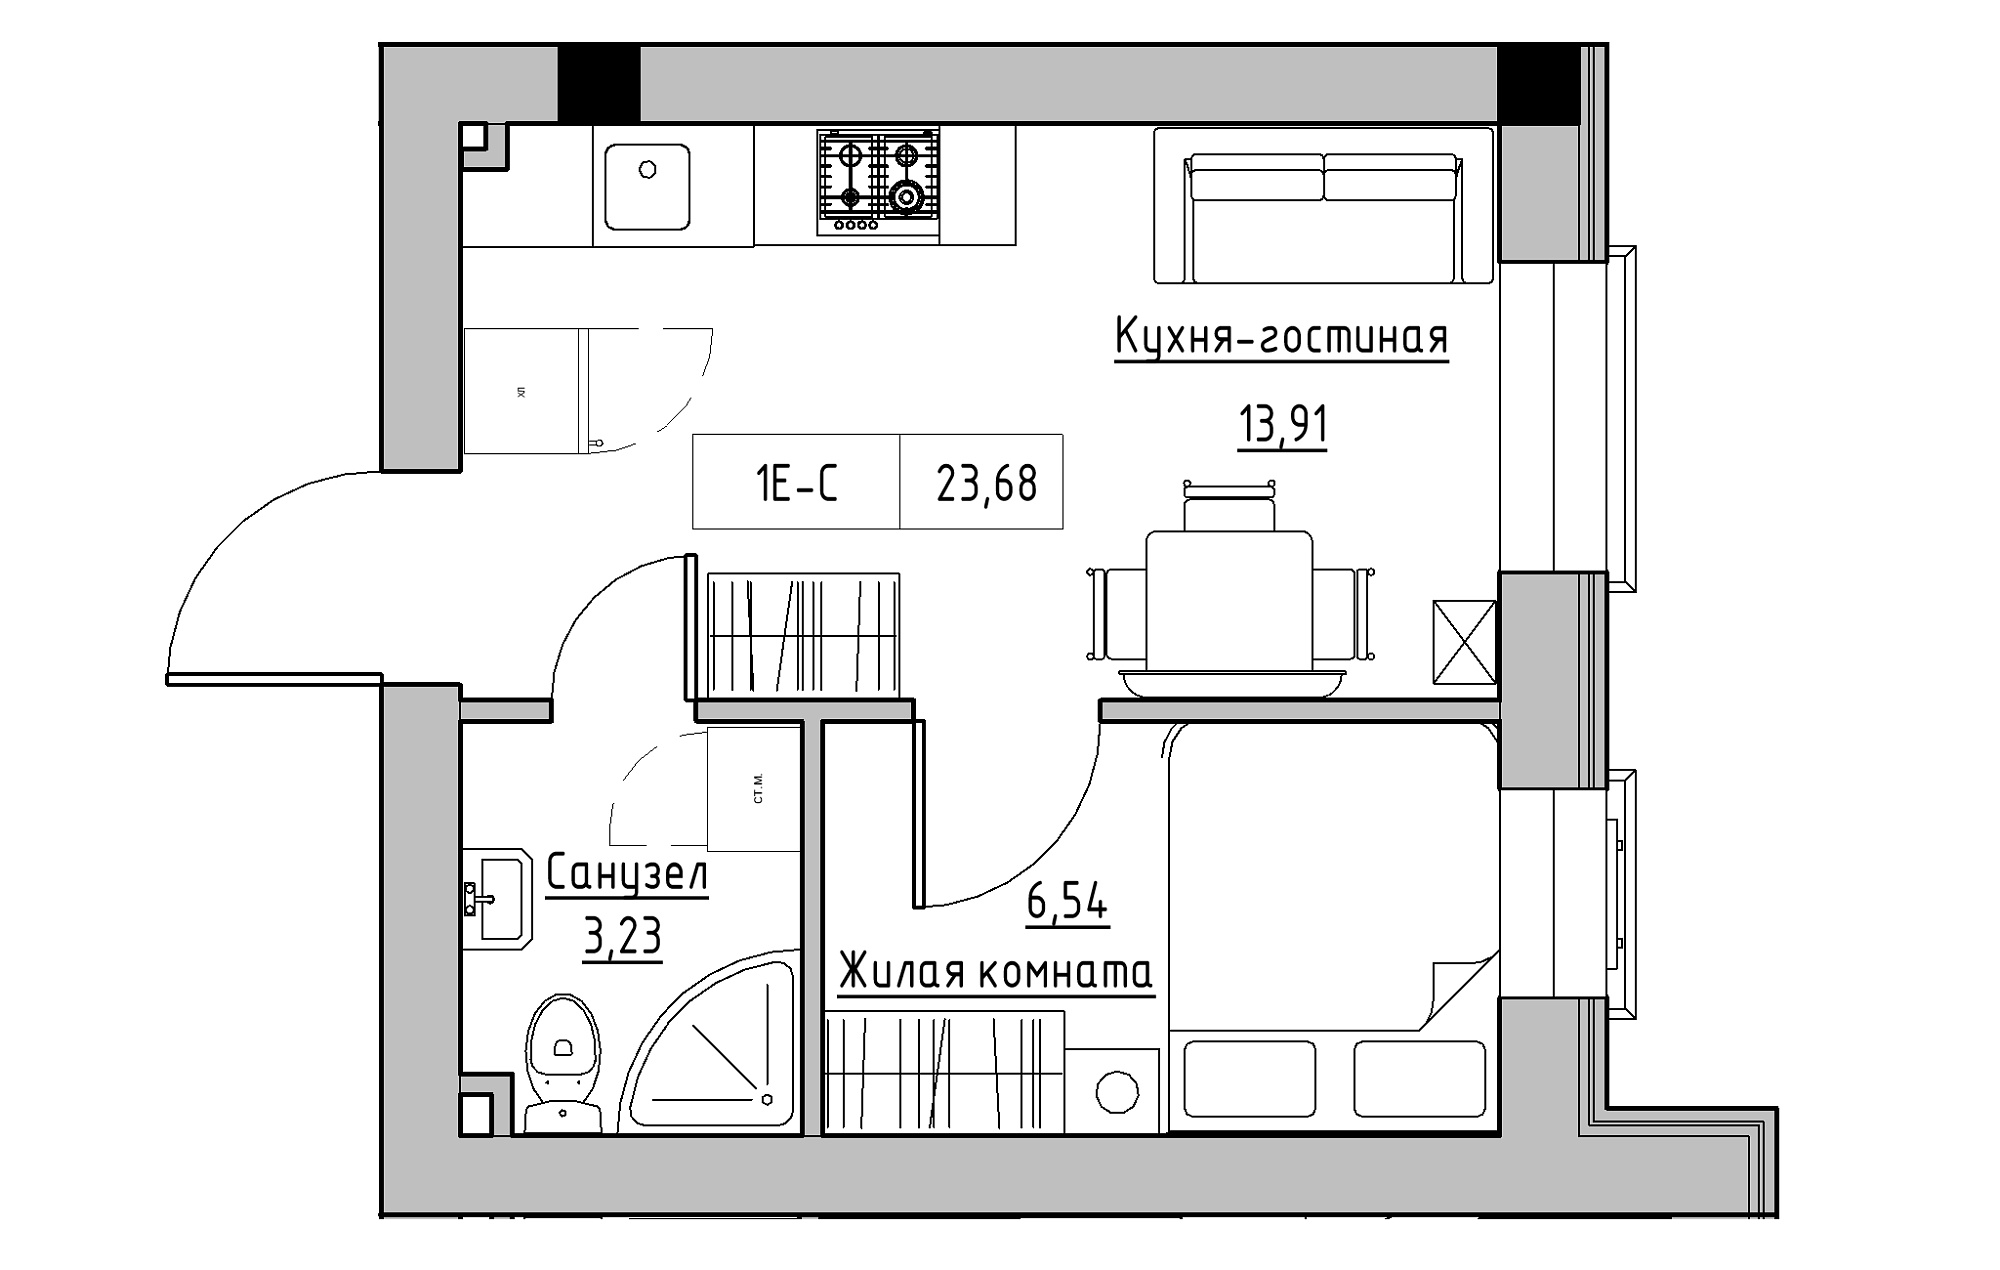 Планування 1-к квартира площею 23.68м2, KS-018-01/0009.